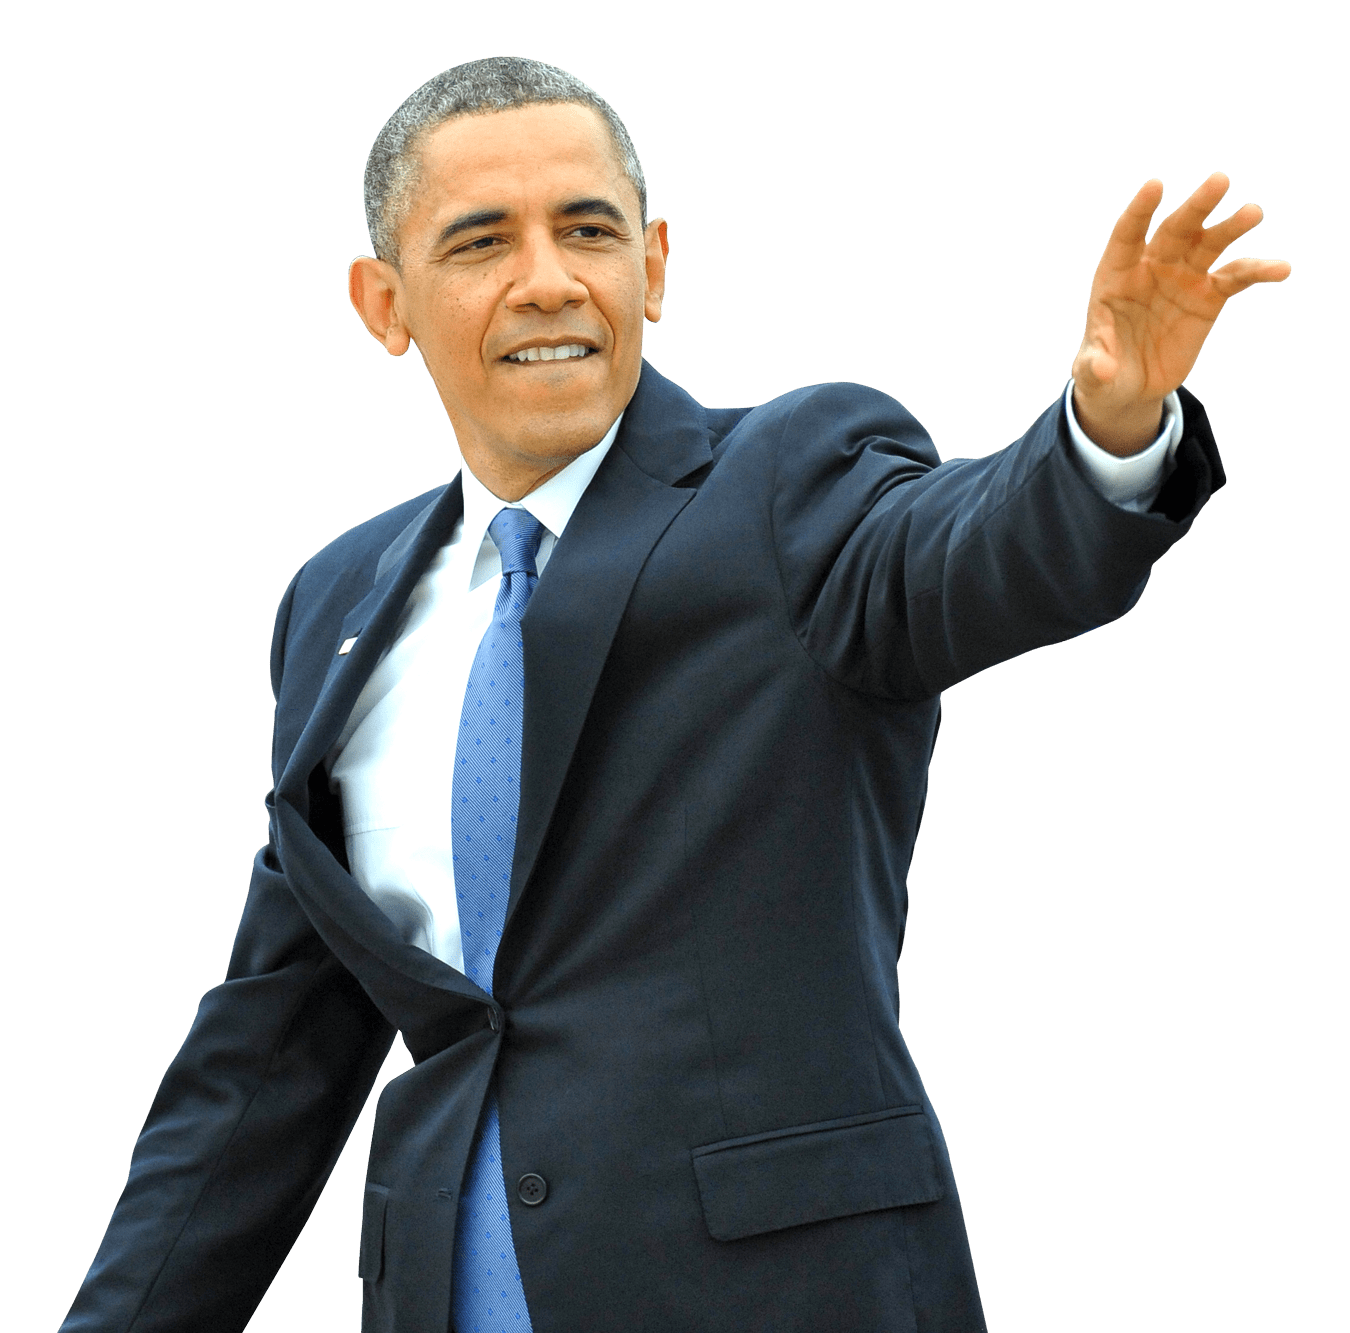 Barack Obama PNG HD Quality